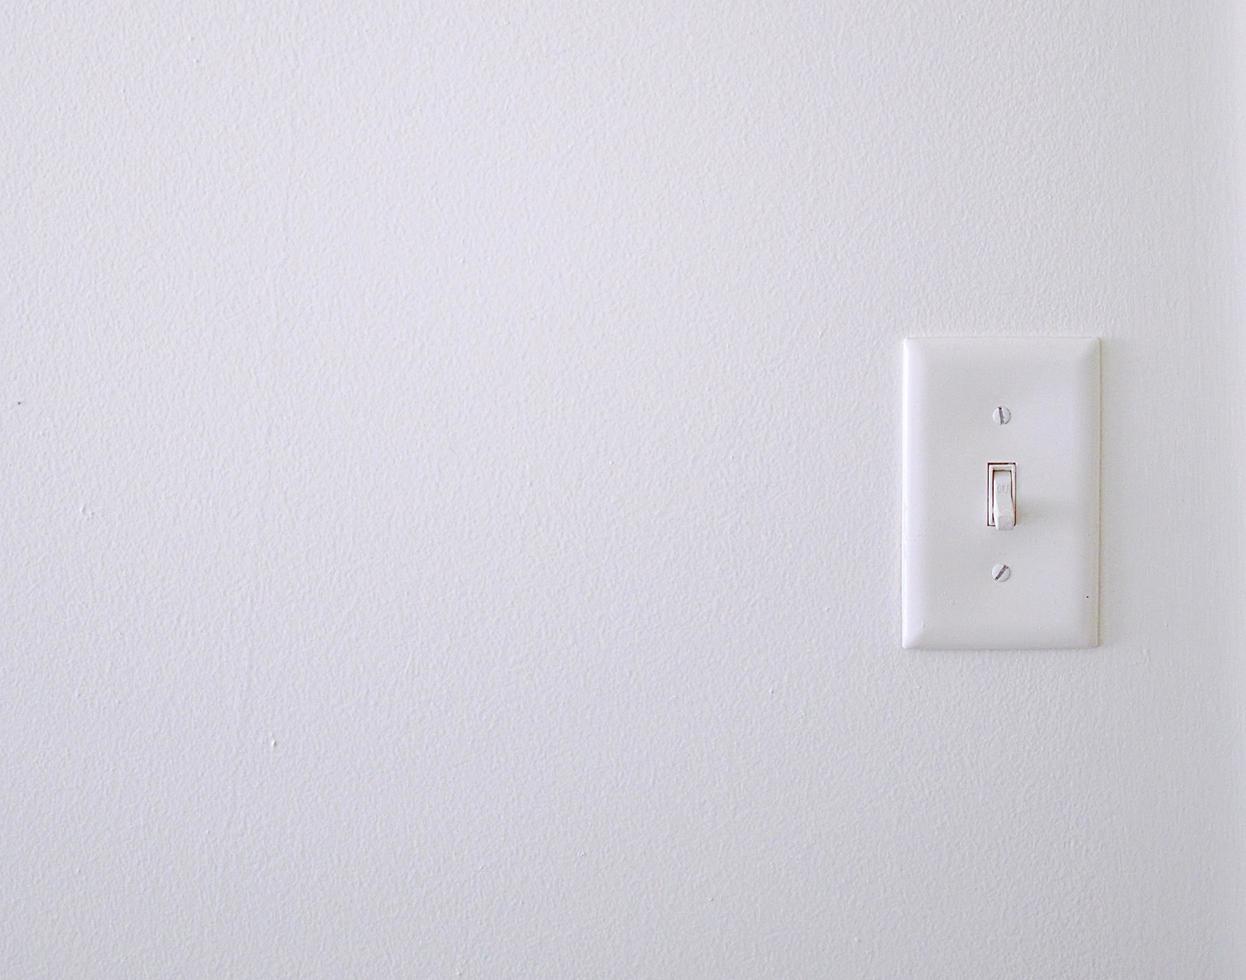 Un interruptor de luz blanca en una pared.